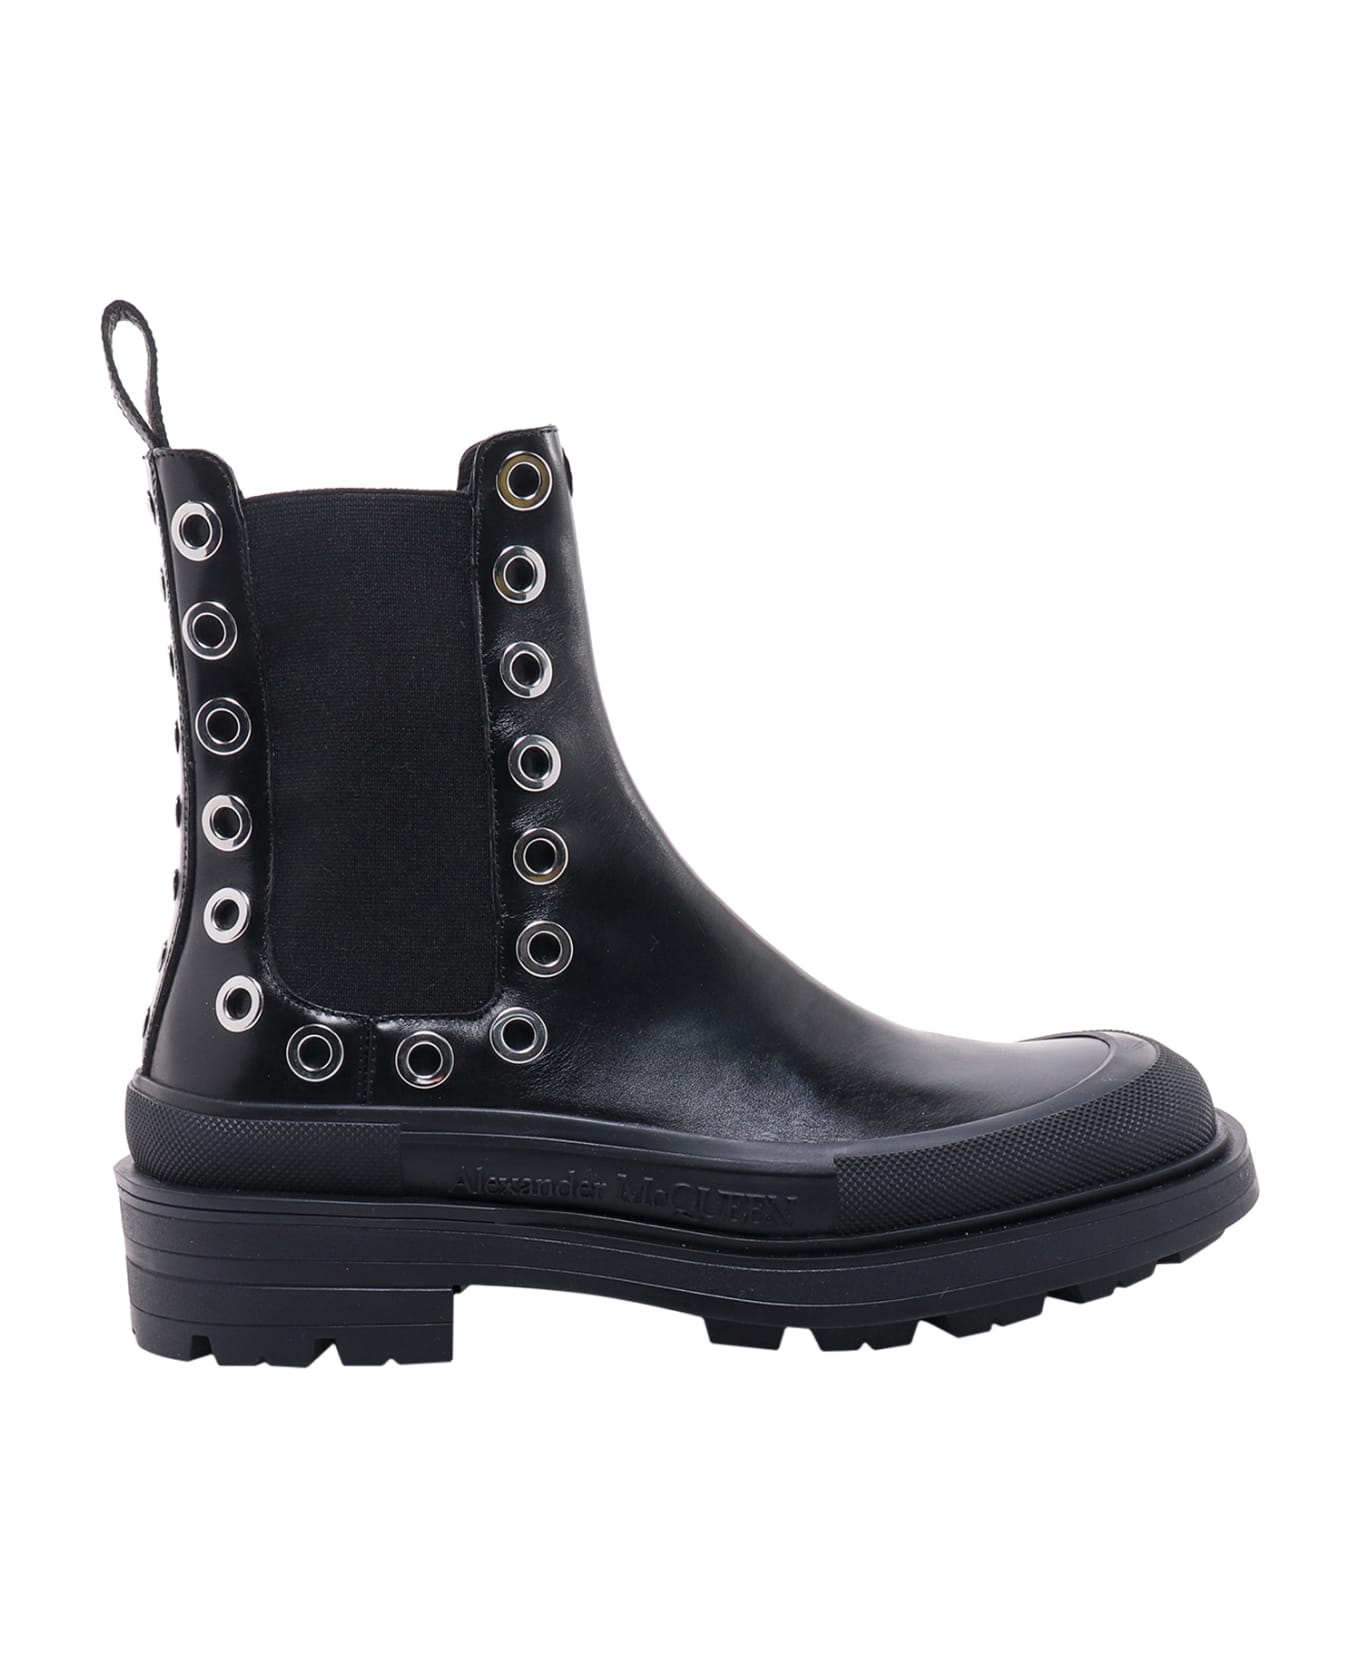 Alexander McQueen Stack Boots - Black